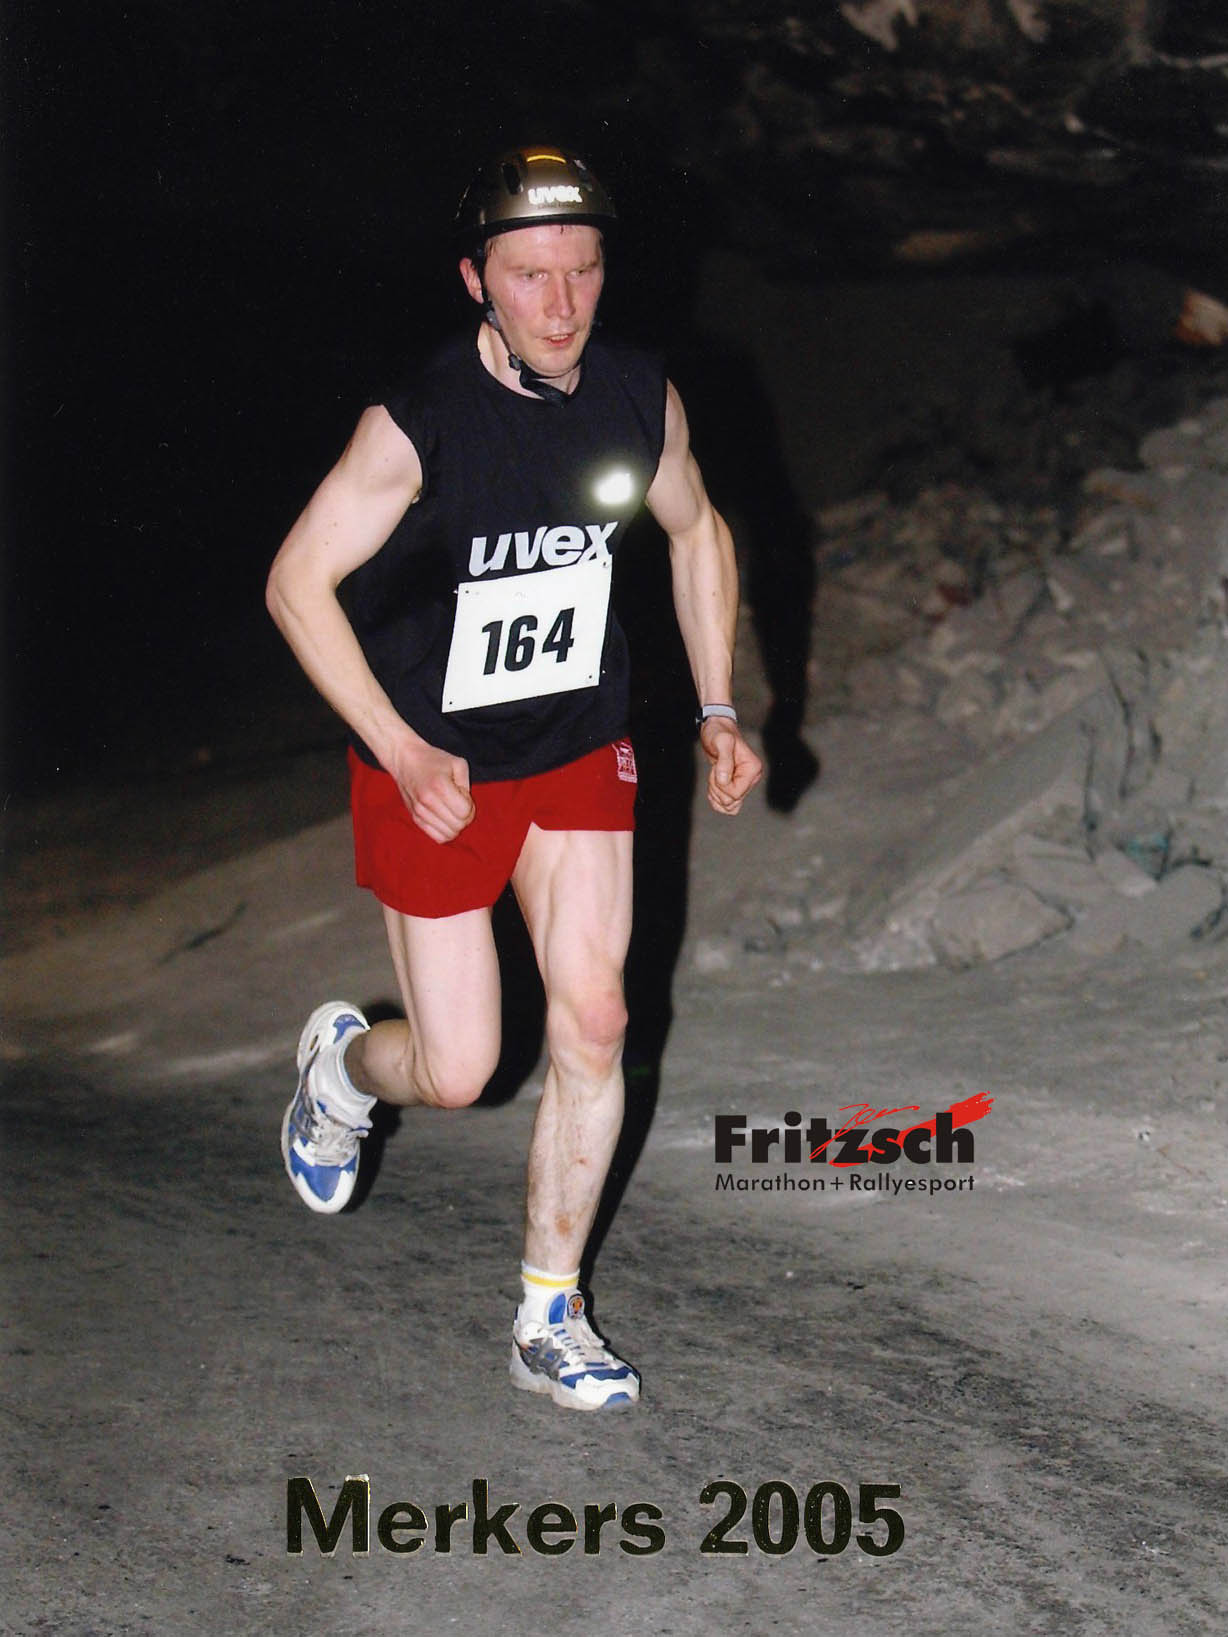 Cave marathon - Crystal Marathon in Merkers Thuringia